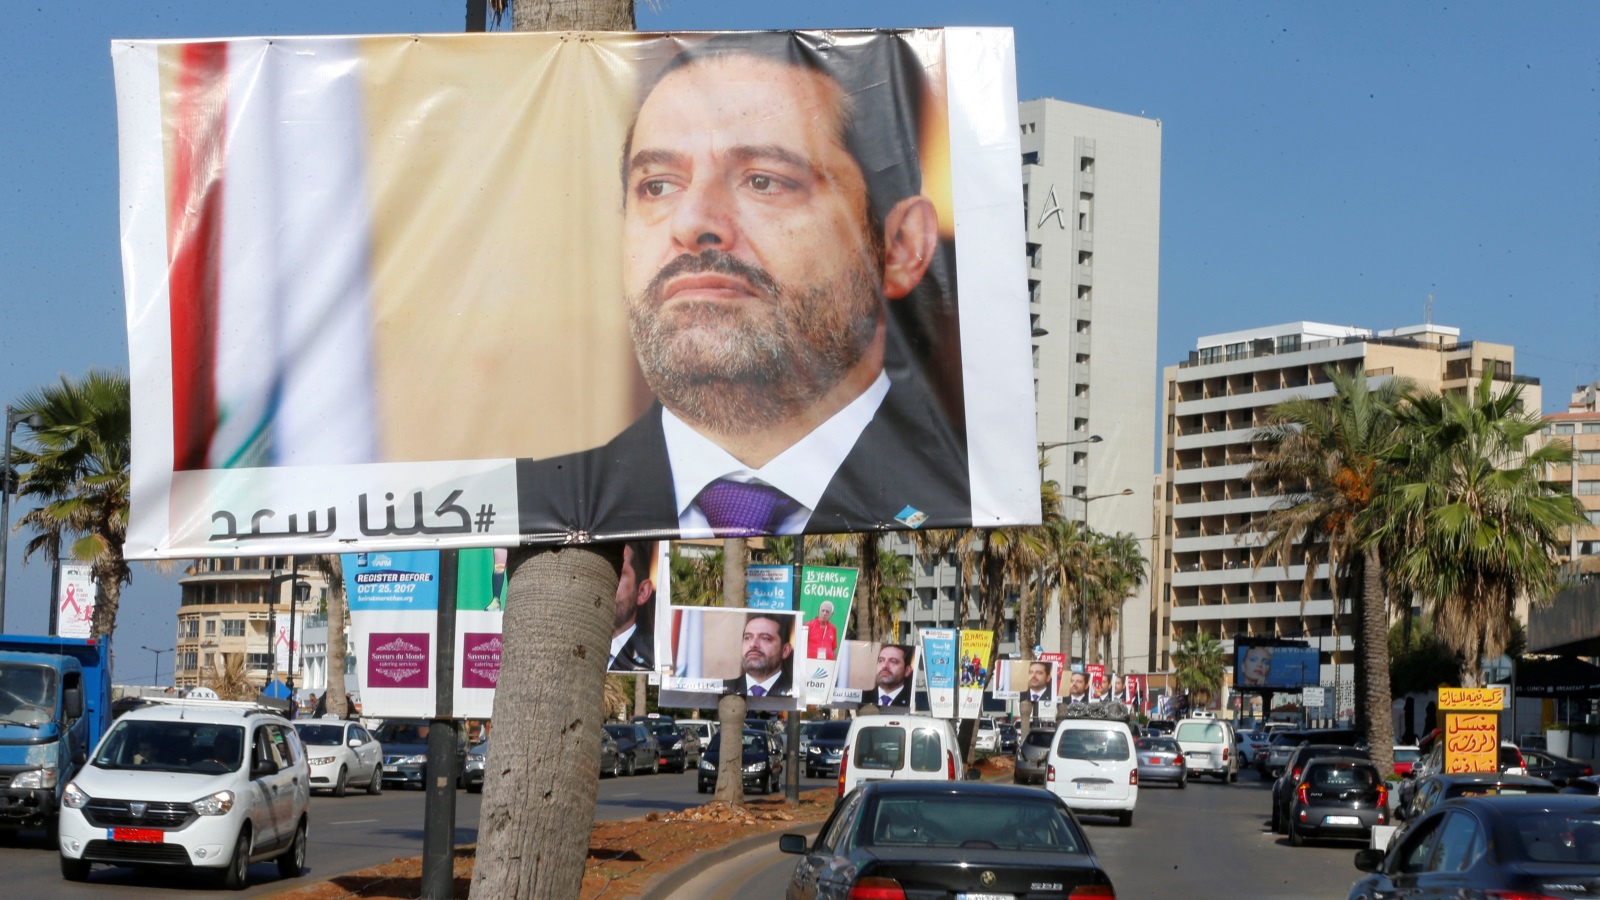 ‪صور لرئيس الوزراء المستقيل سعد الحريري في بيروت‬ صور لرئيس الوزراء المستقيل سعد الحريري في بيروت (رويترز)